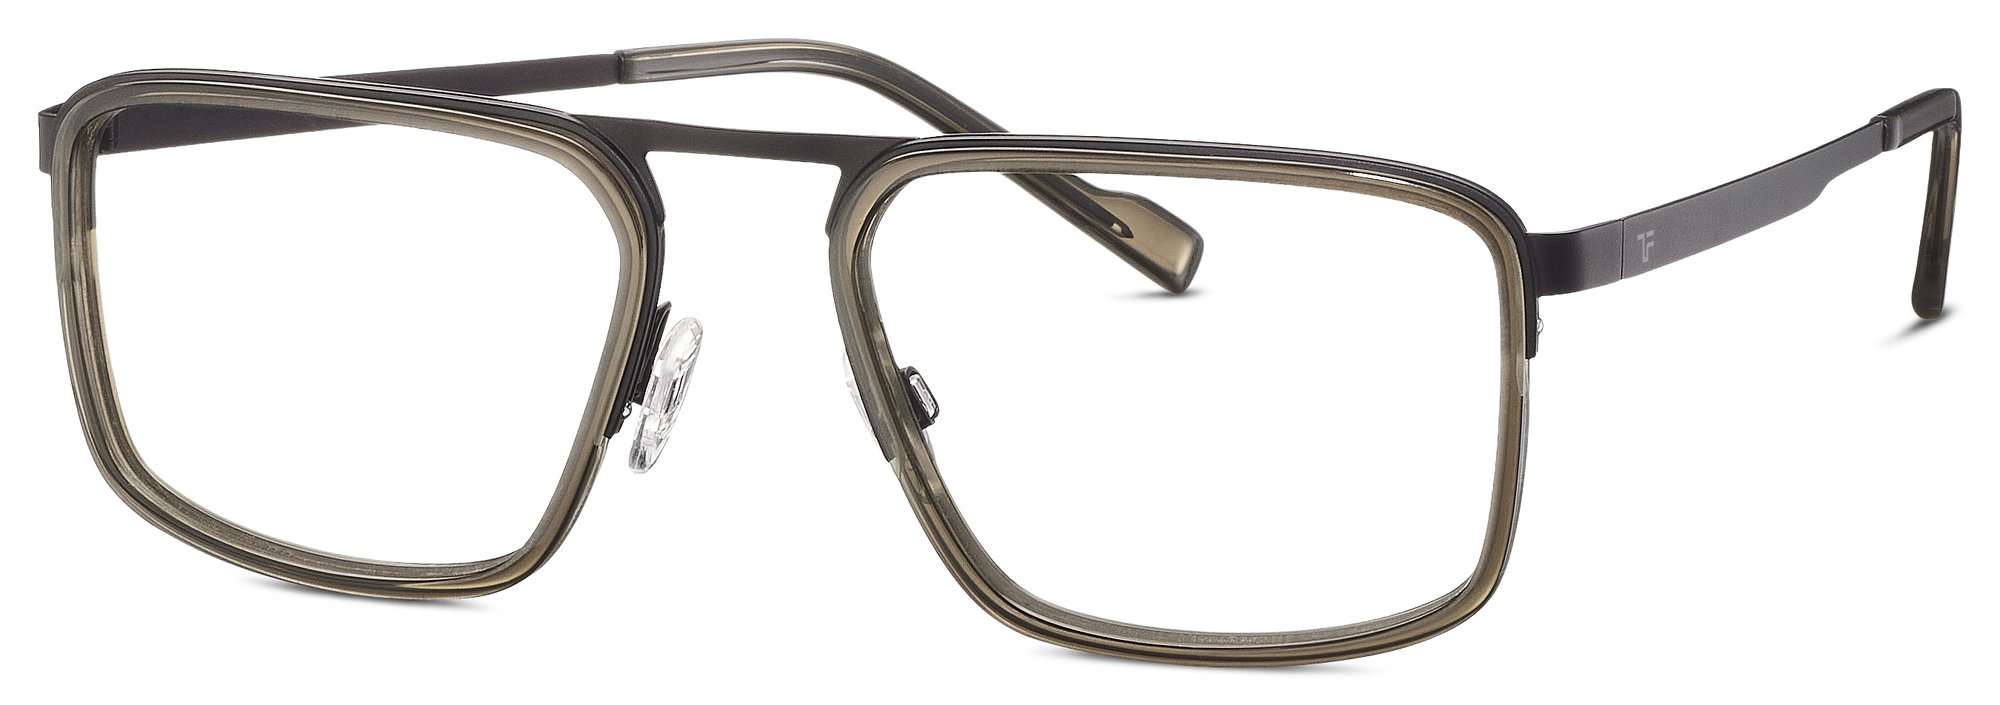 Das Bild zeigt die Korrektionsbrille 820967 14 von der Marke Titanflex in Schwarz.